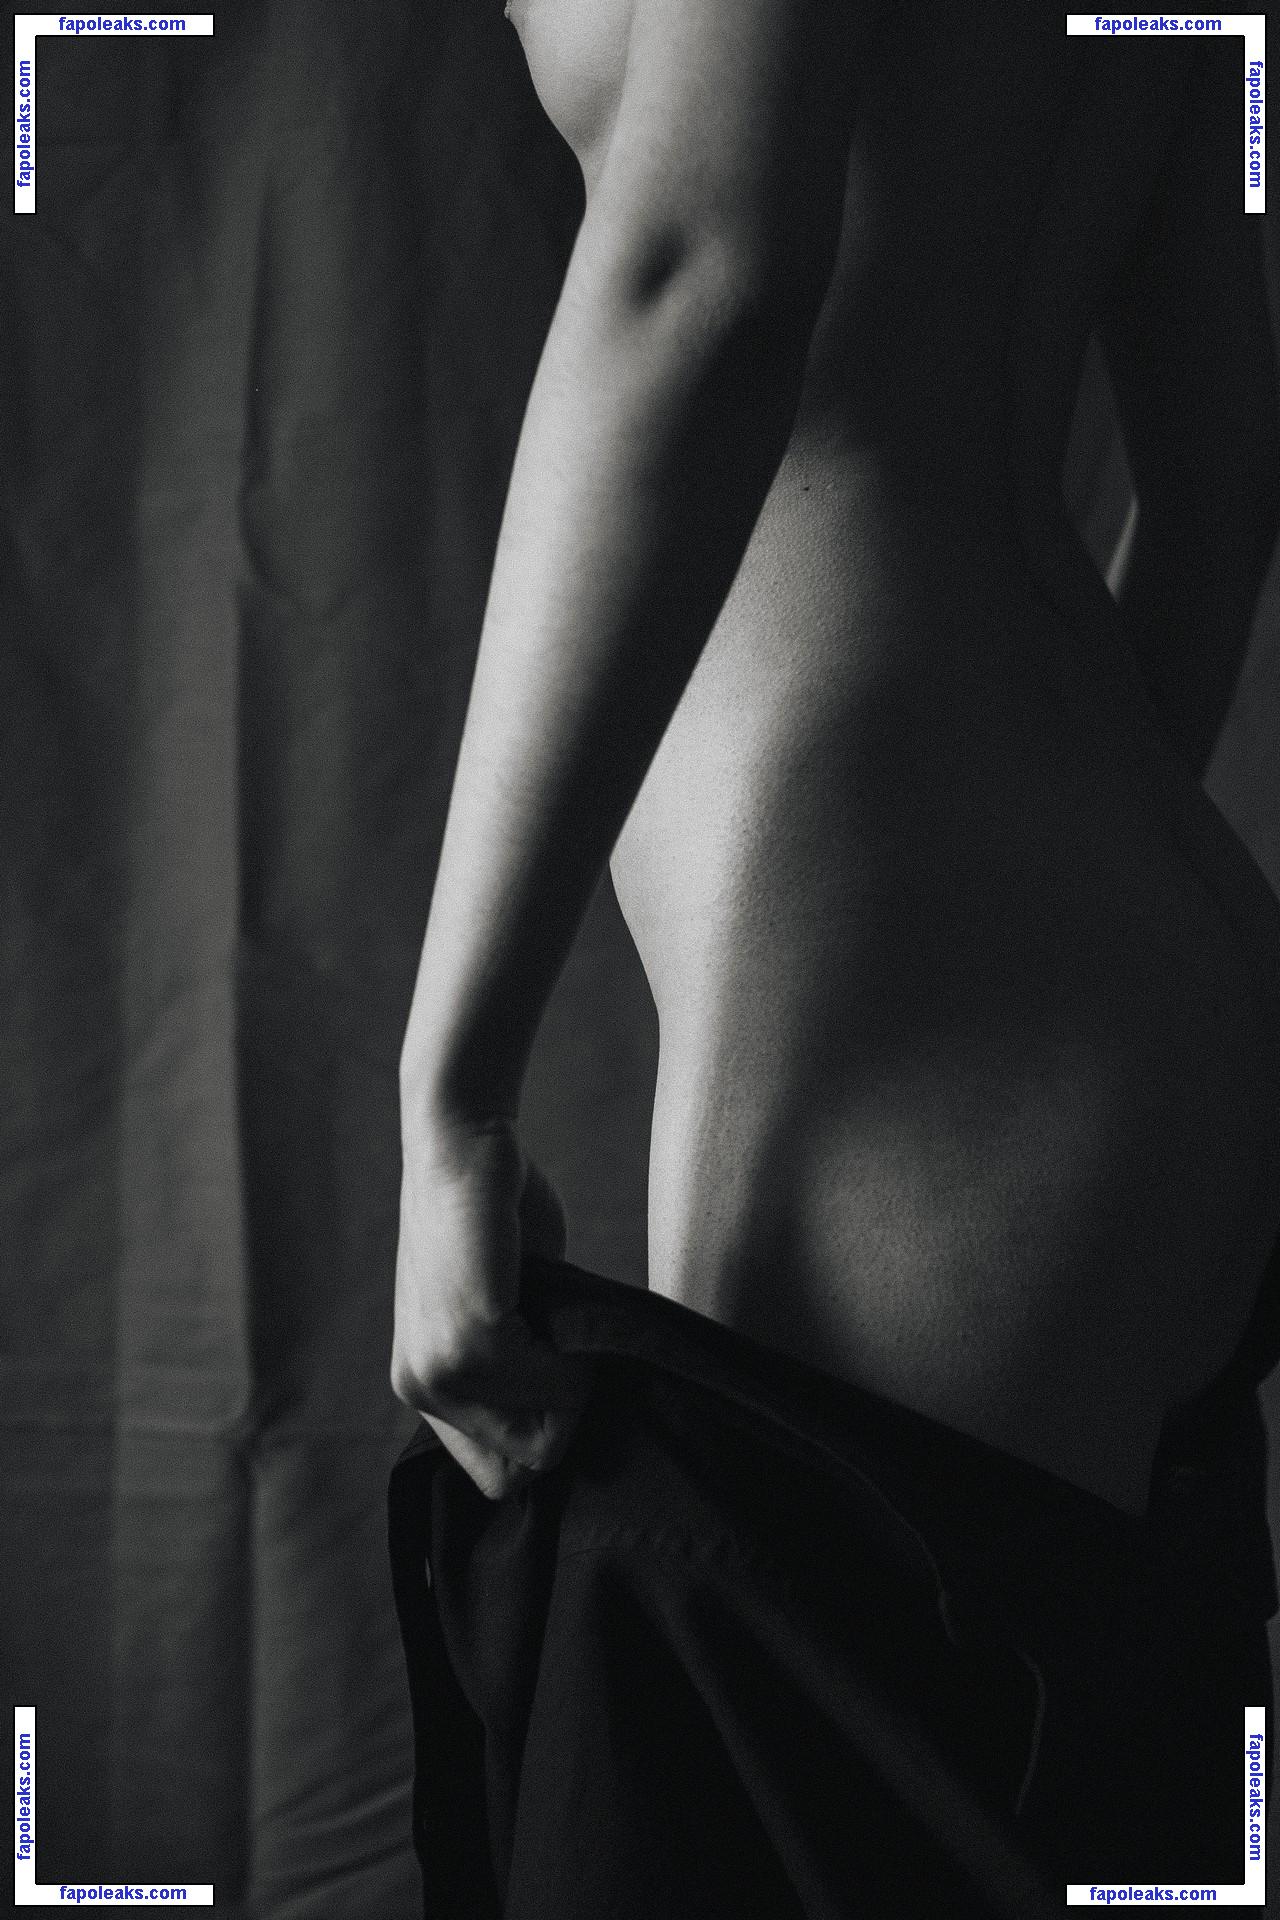 Valeria Shashenok / valeriahaver / valerisssh nude photo #0018 from OnlyFans